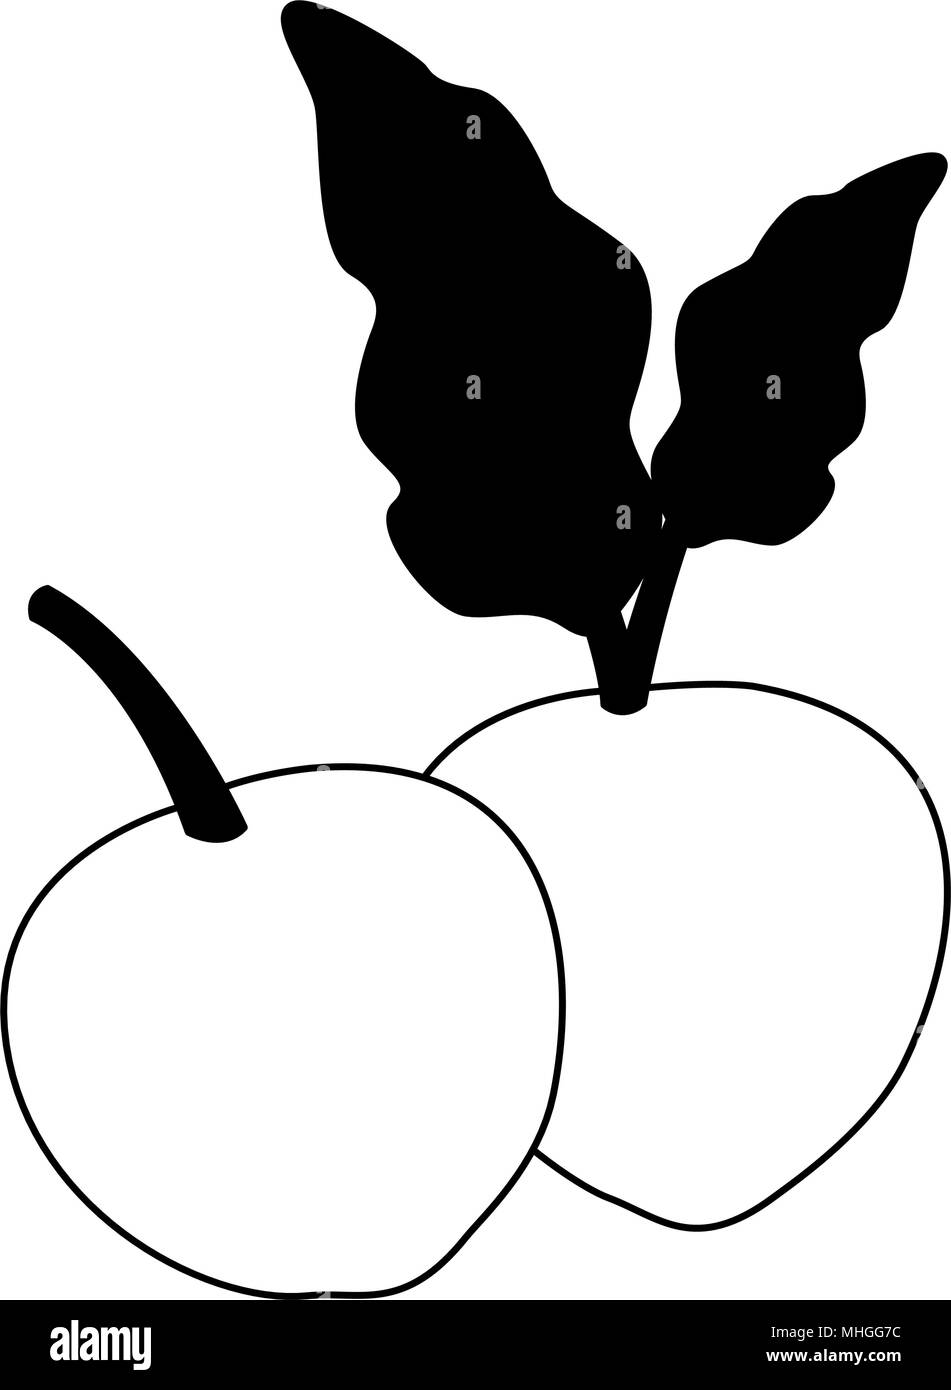 Légumes radis isolé sur les couleurs noir et blanc Illustration de Vecteur